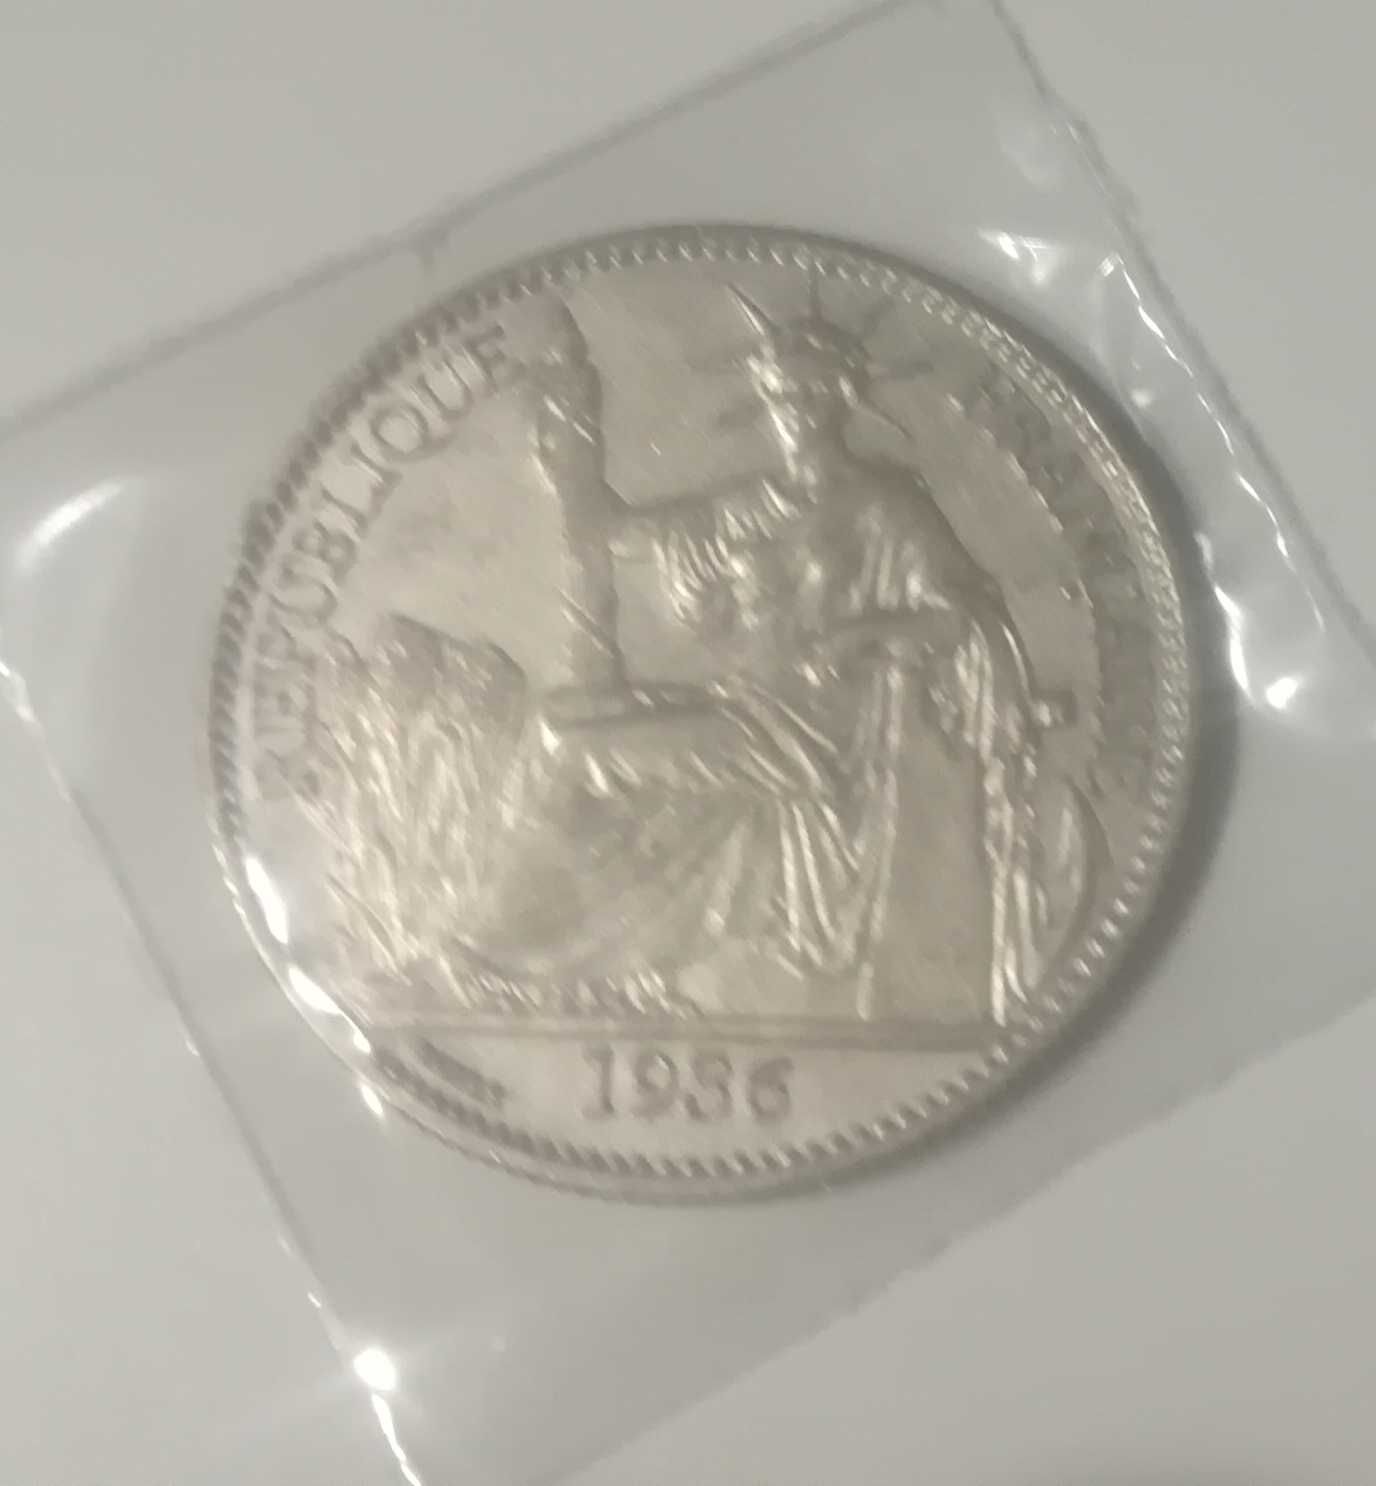 Moneta srebrna 50 centymów 1936 Indochiny Francuskie bardzo rzadka.